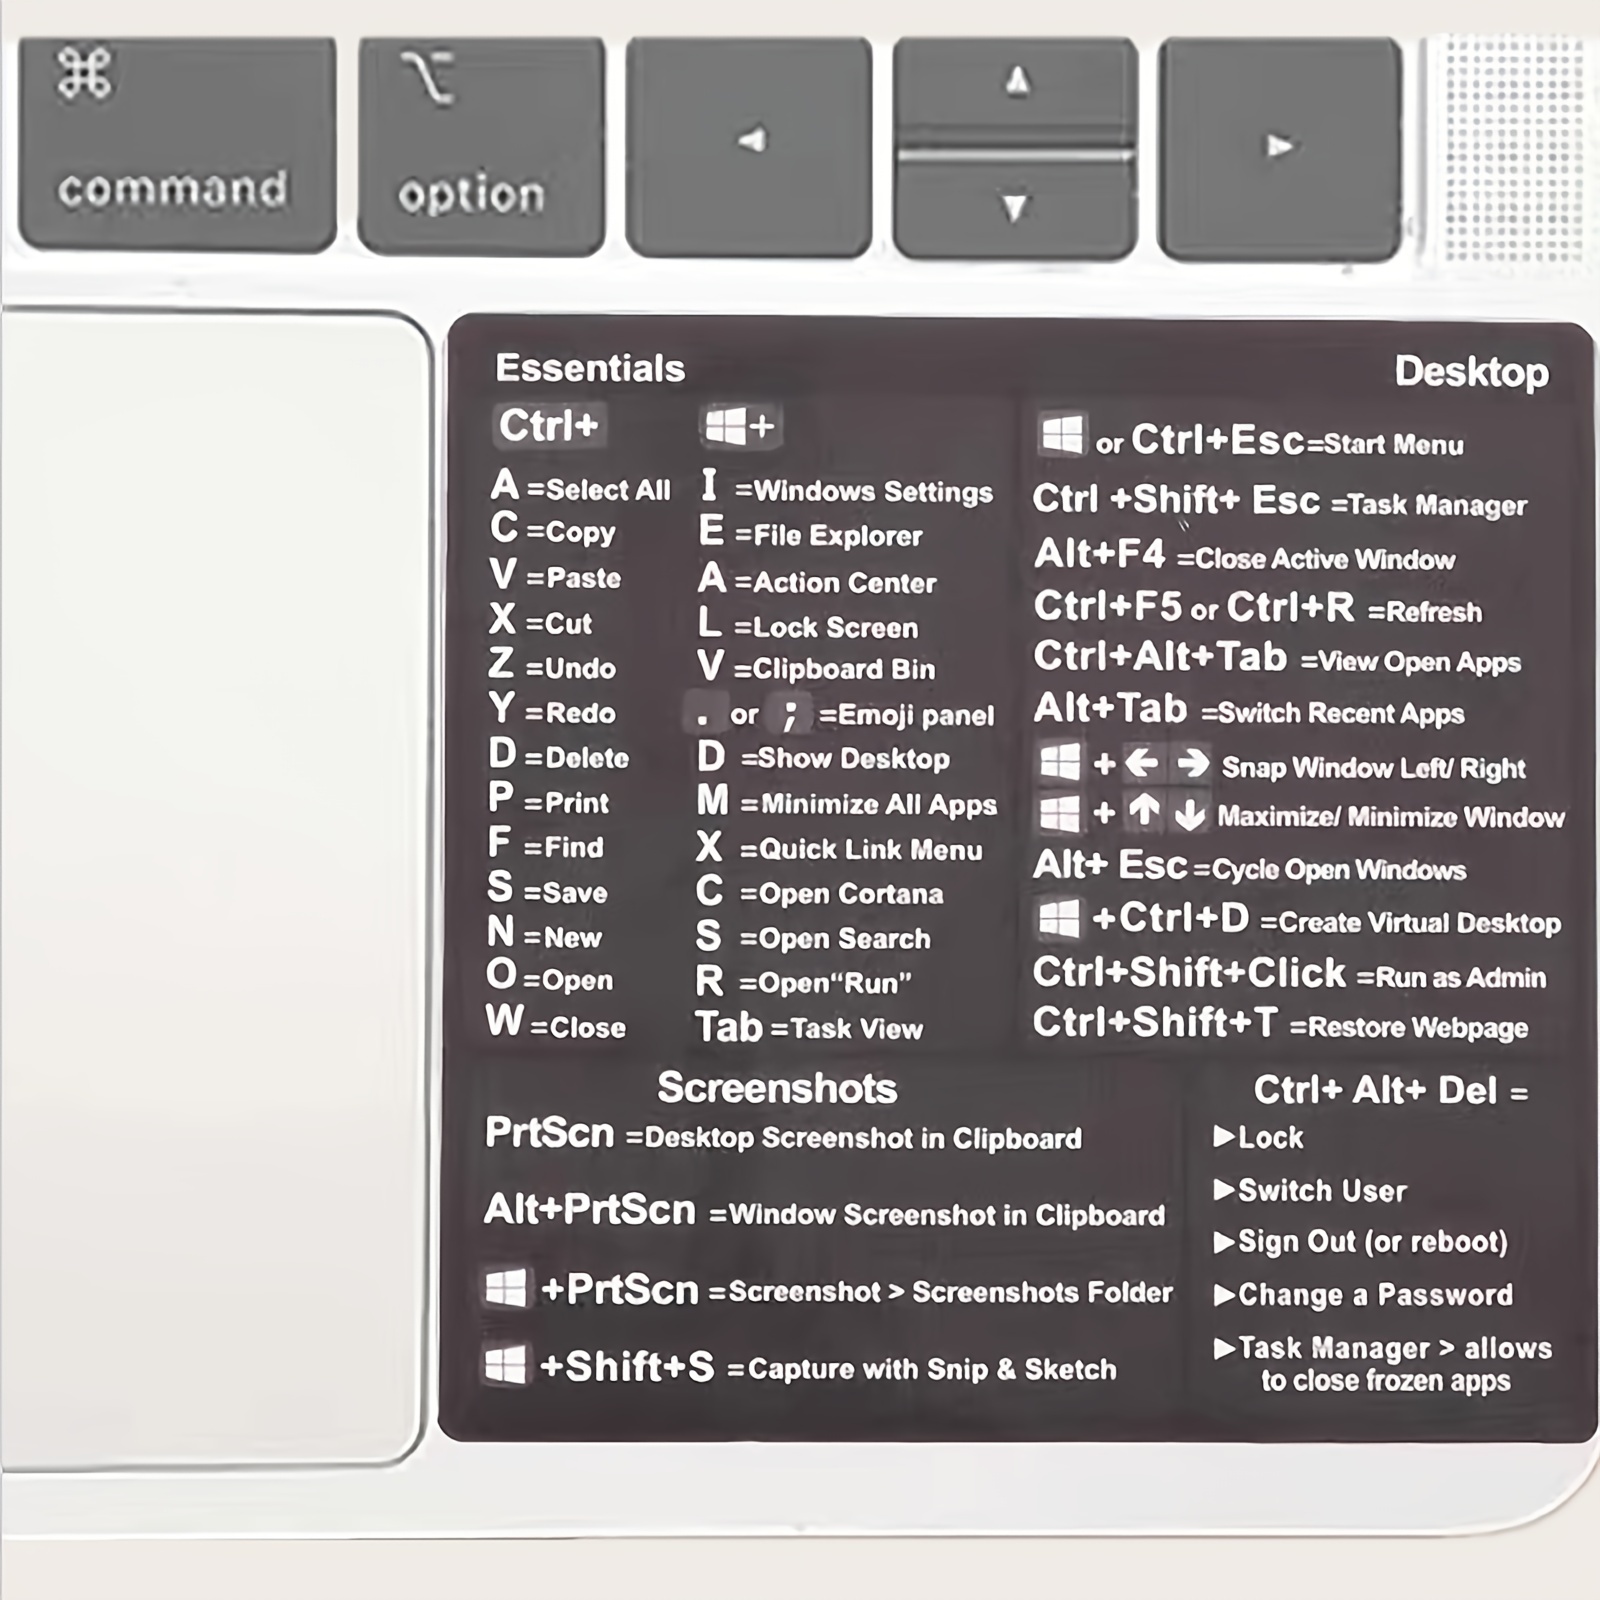 Autocollant adhésif amovible pour clavier de référence PC Windows, raccourci  d'ordinateur, pour Guide de clavier de référence rapide